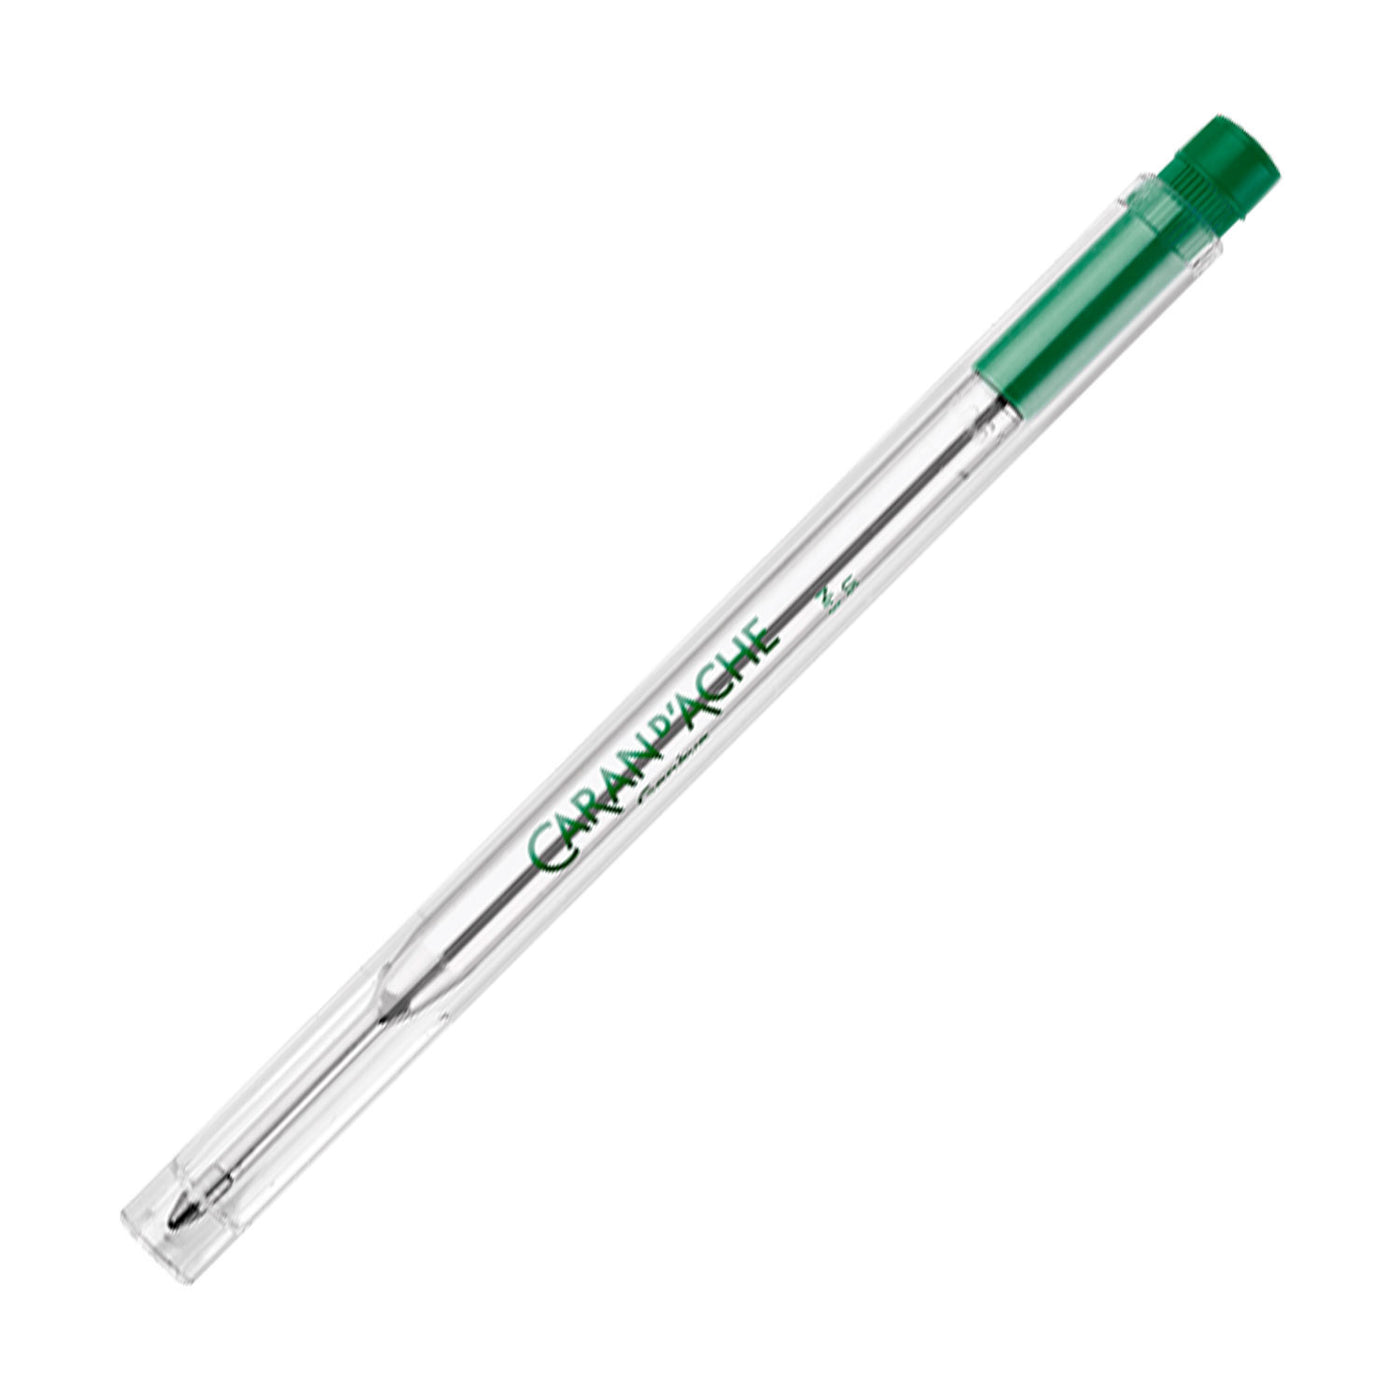 Caran d'Ache 8418.000 Goliath Ball Pen Medium Refill - Green 1